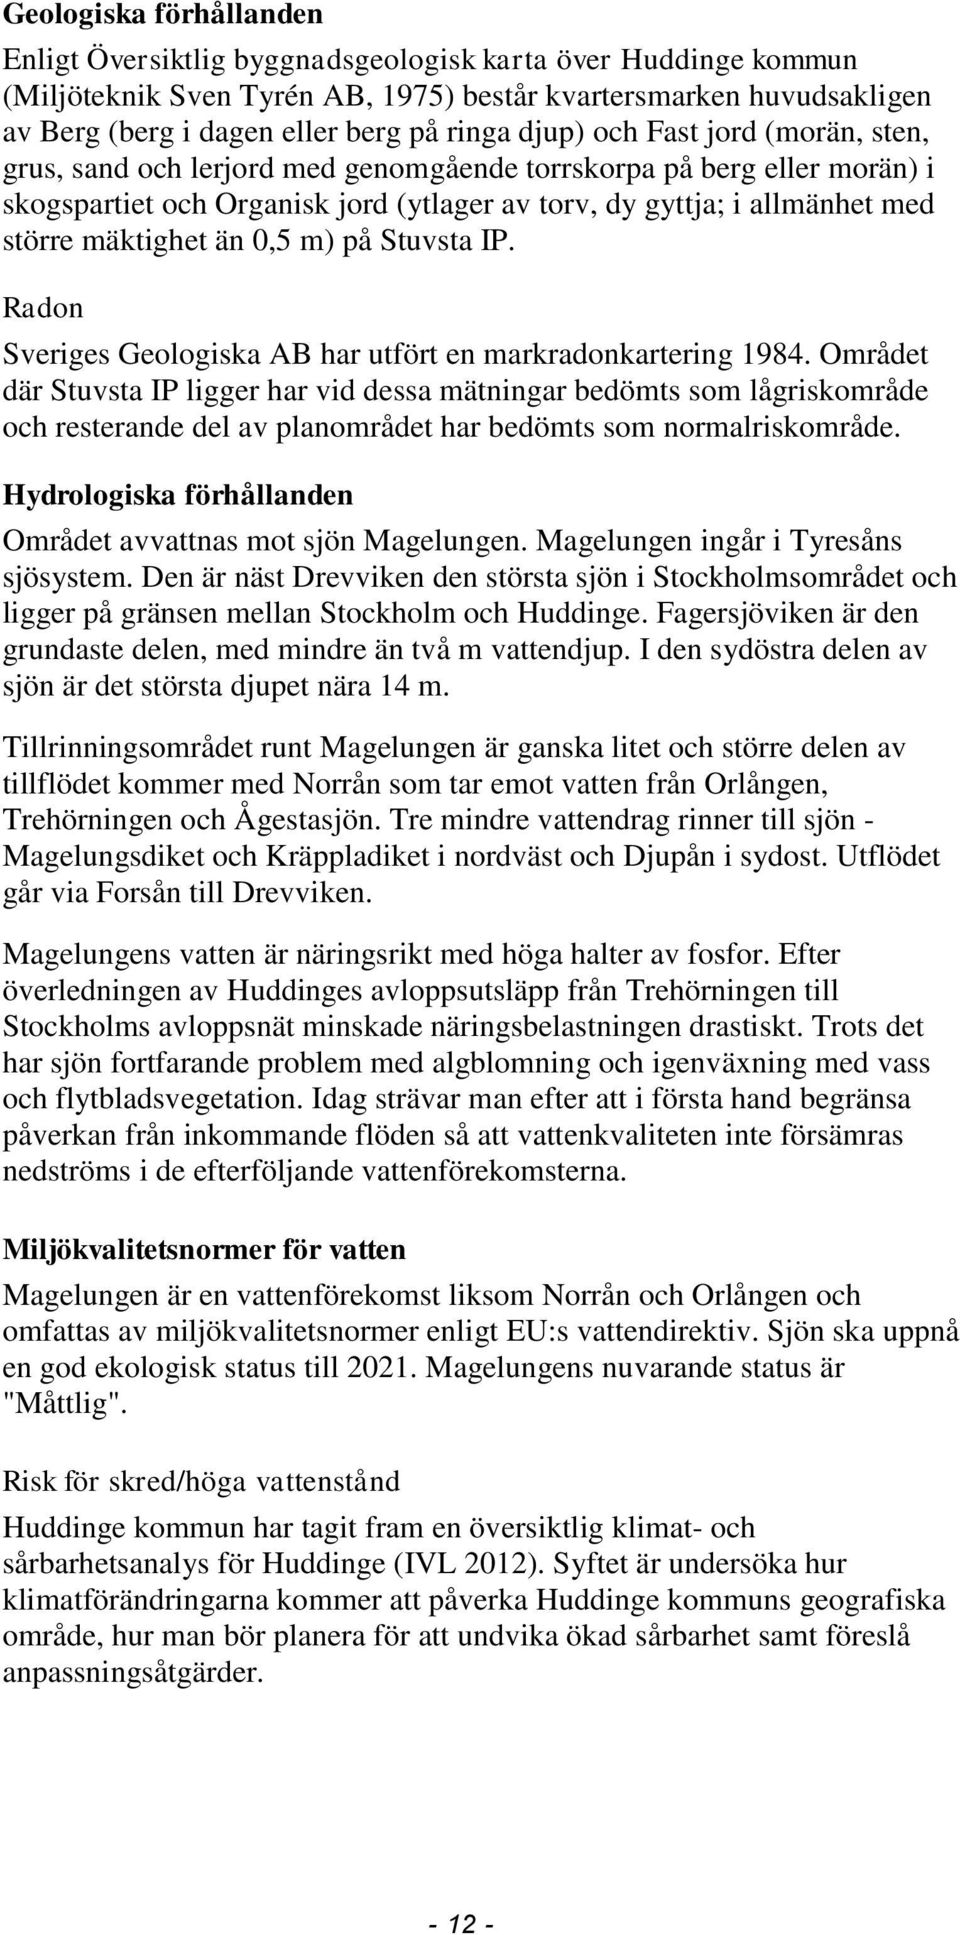 än 0,5 m) på Stuvsta IP. Radon Sveriges Geologiska AB har utfört en markradonkartering 1984.